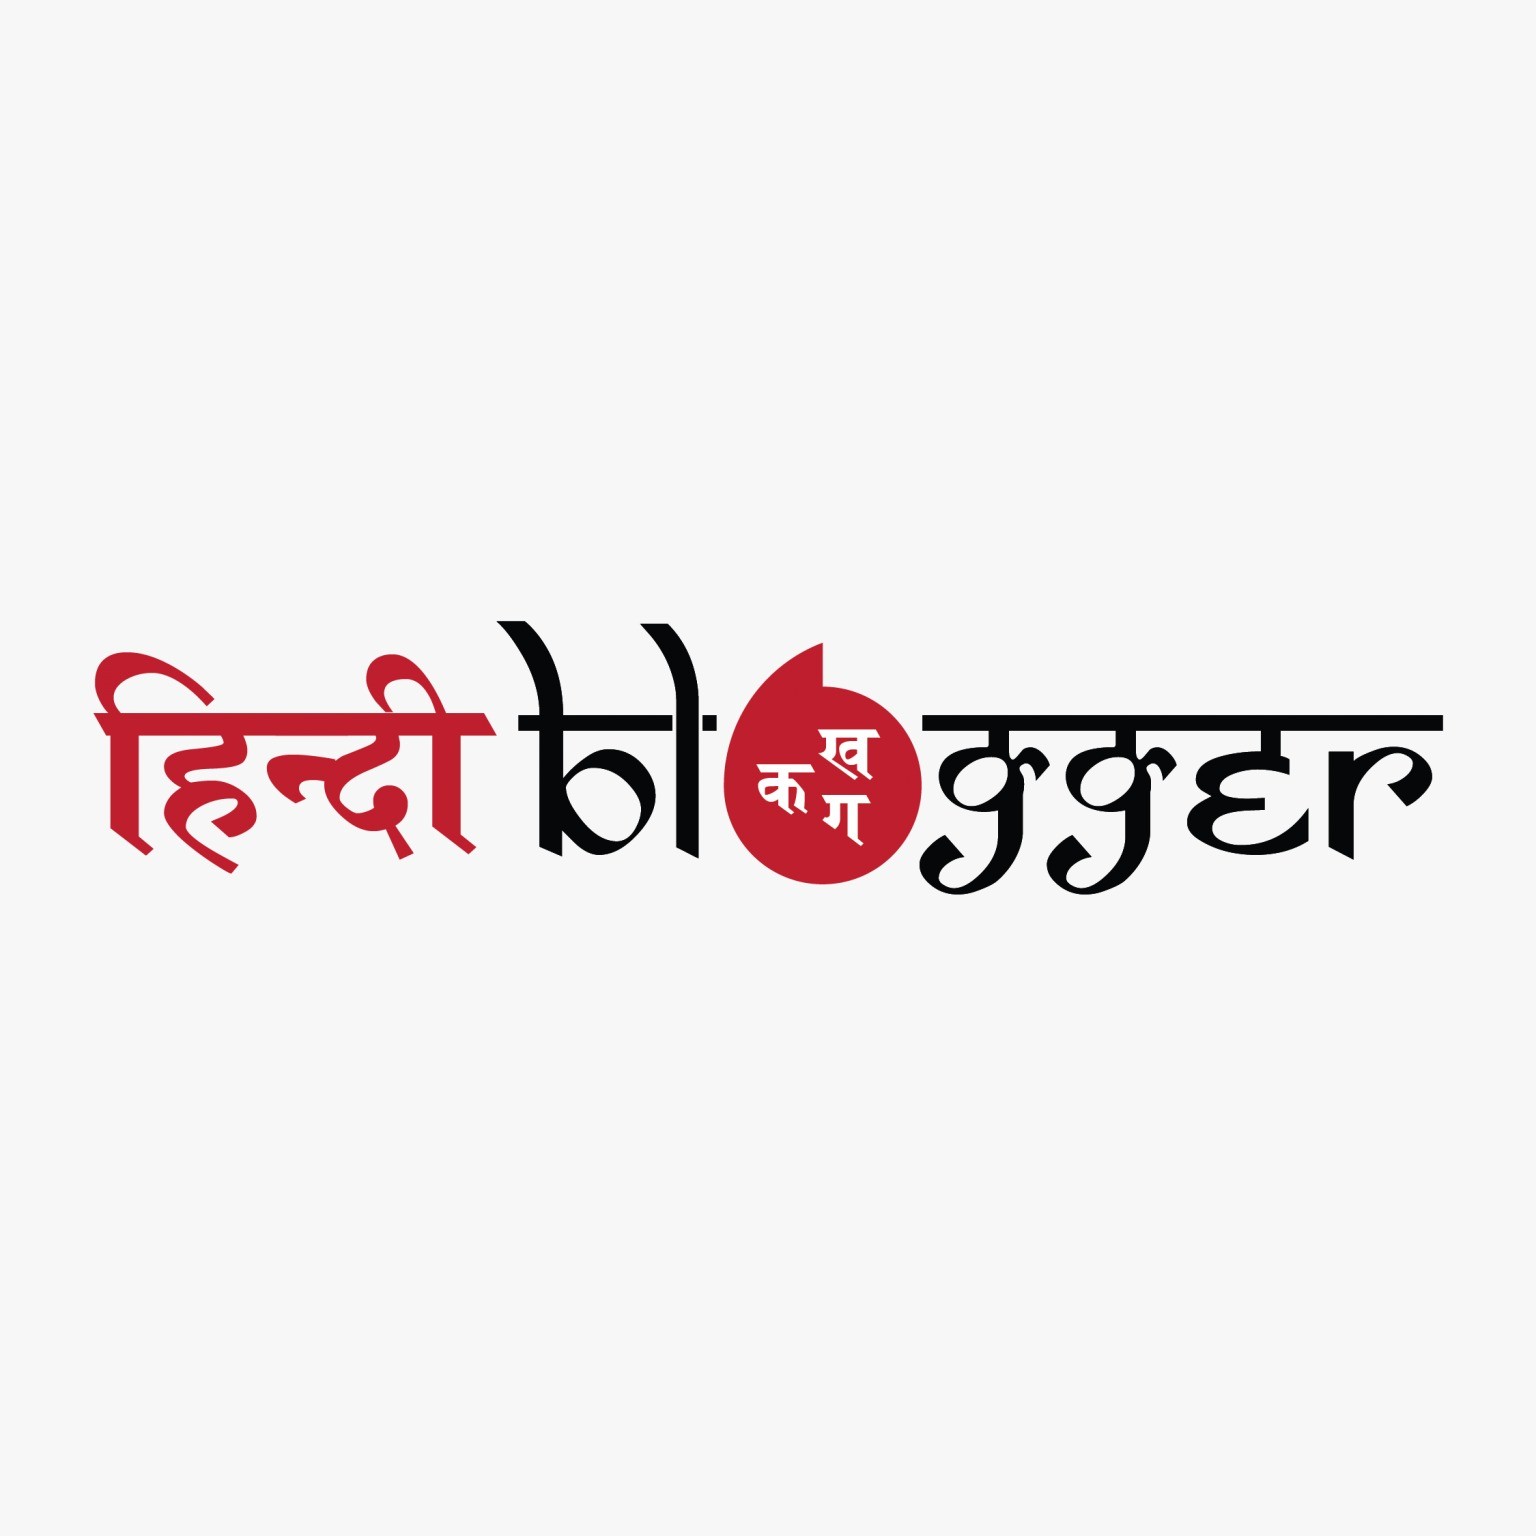 Hindi Varnamala Alphabet